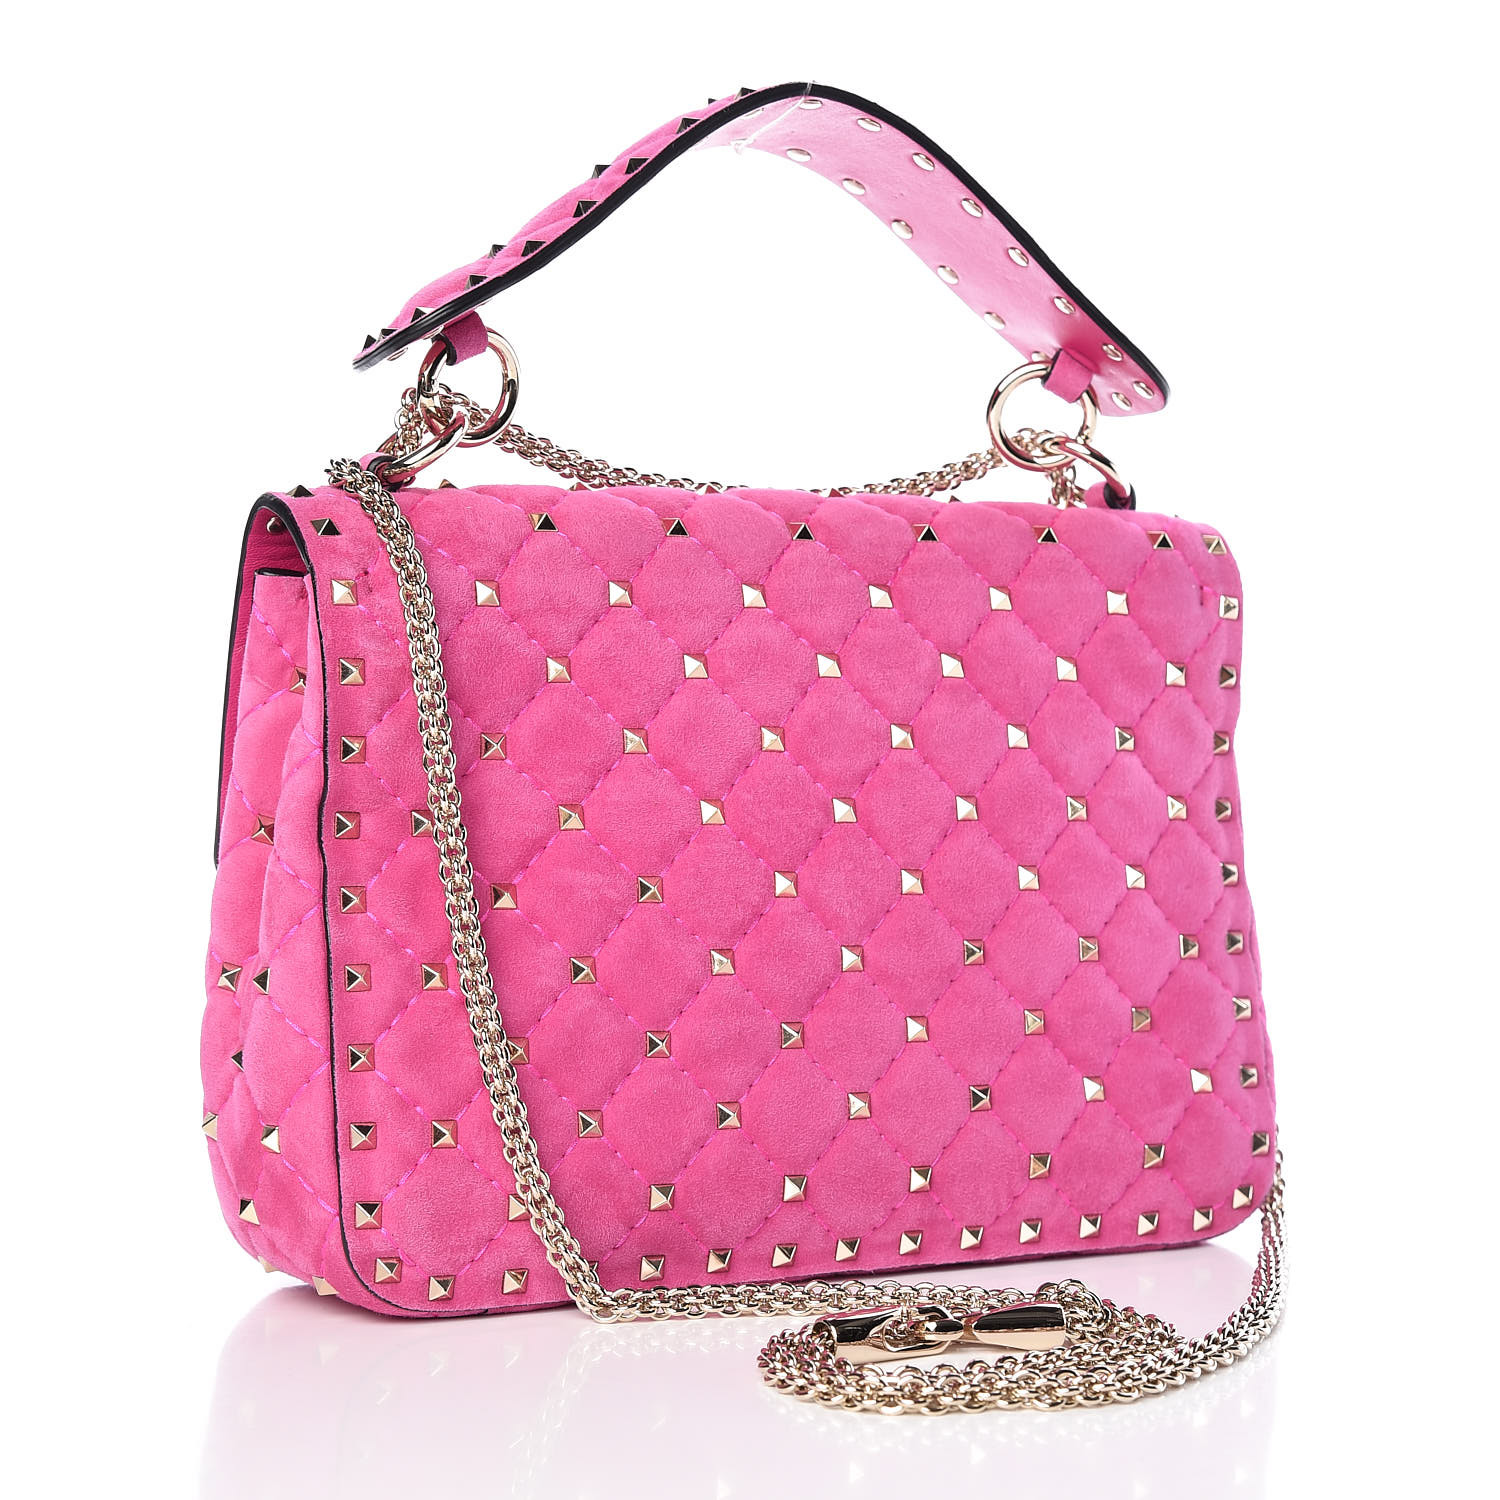 VALENTINO Suede Medium Rockstud Spike Shoulder Bag Pink 419484